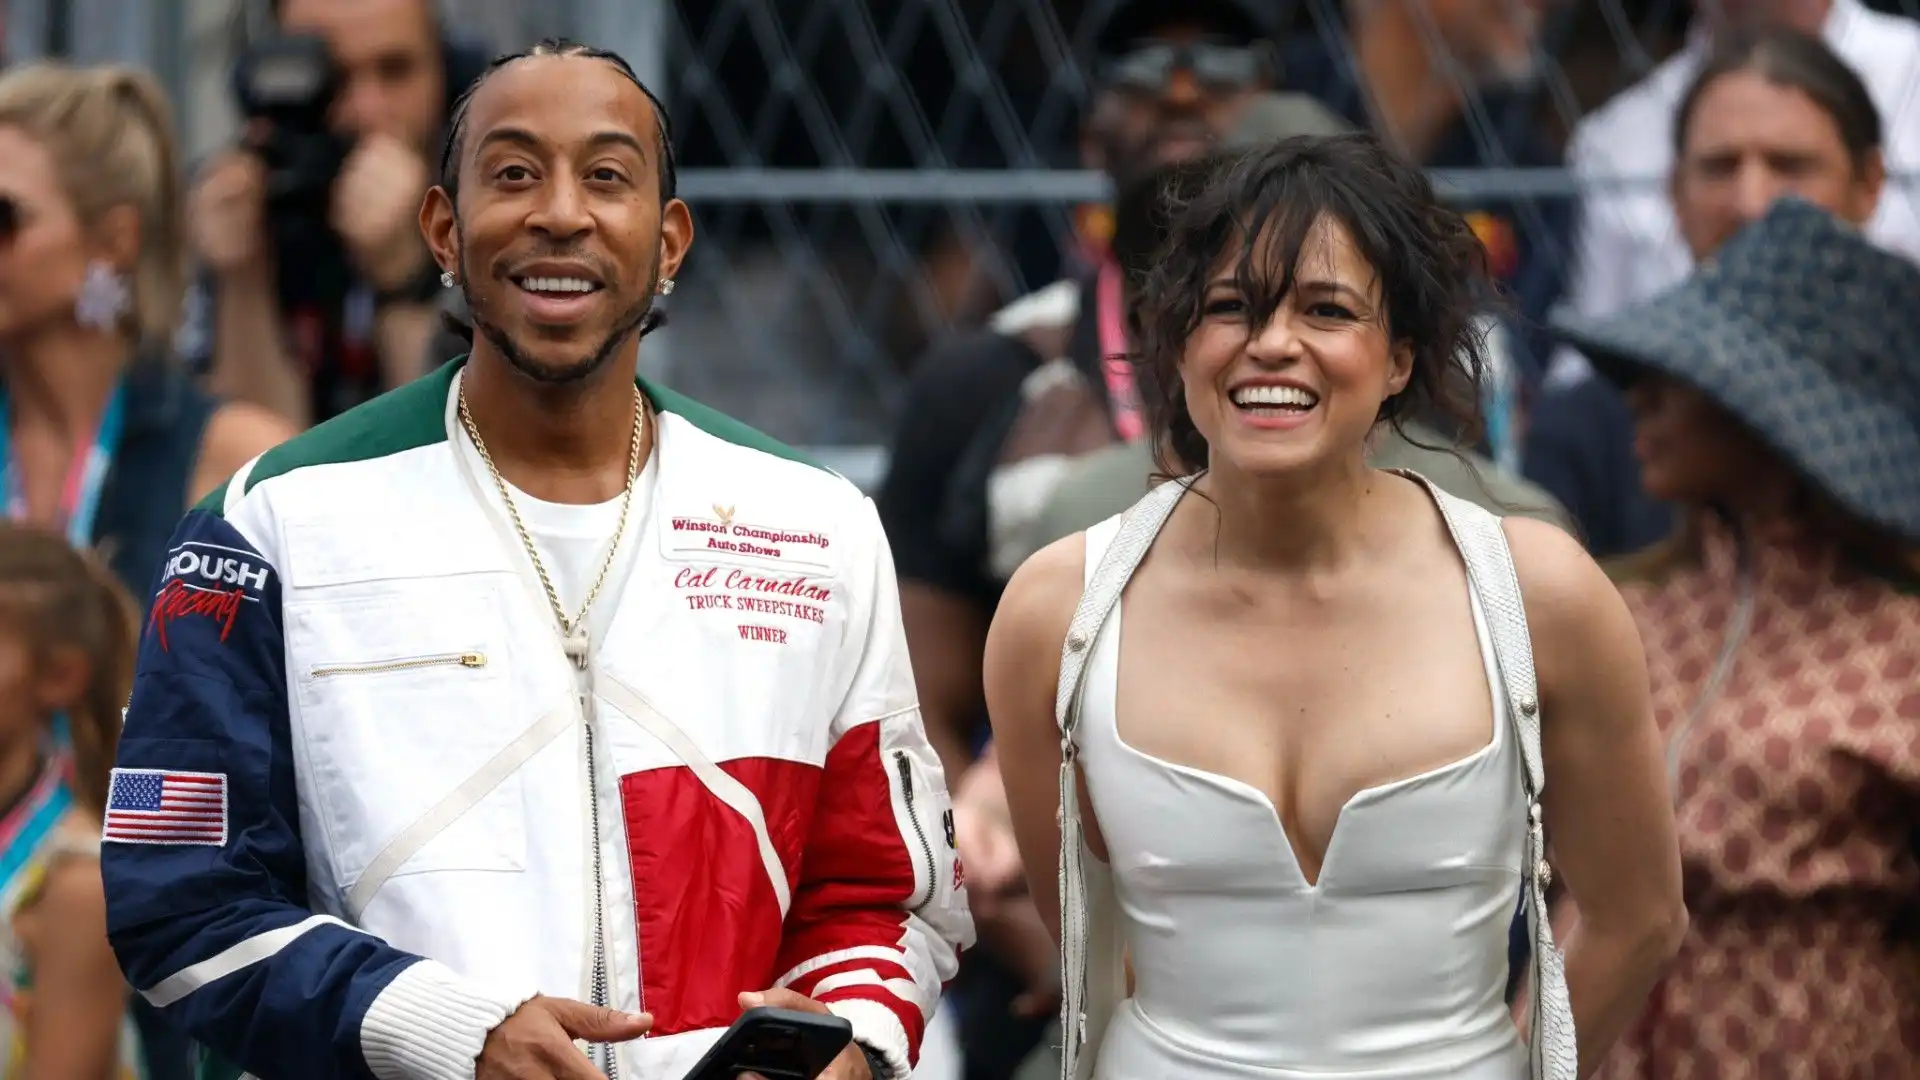 Ludacris e Michelle Rodriguez sembra si siano divertiti molto guardando la gara